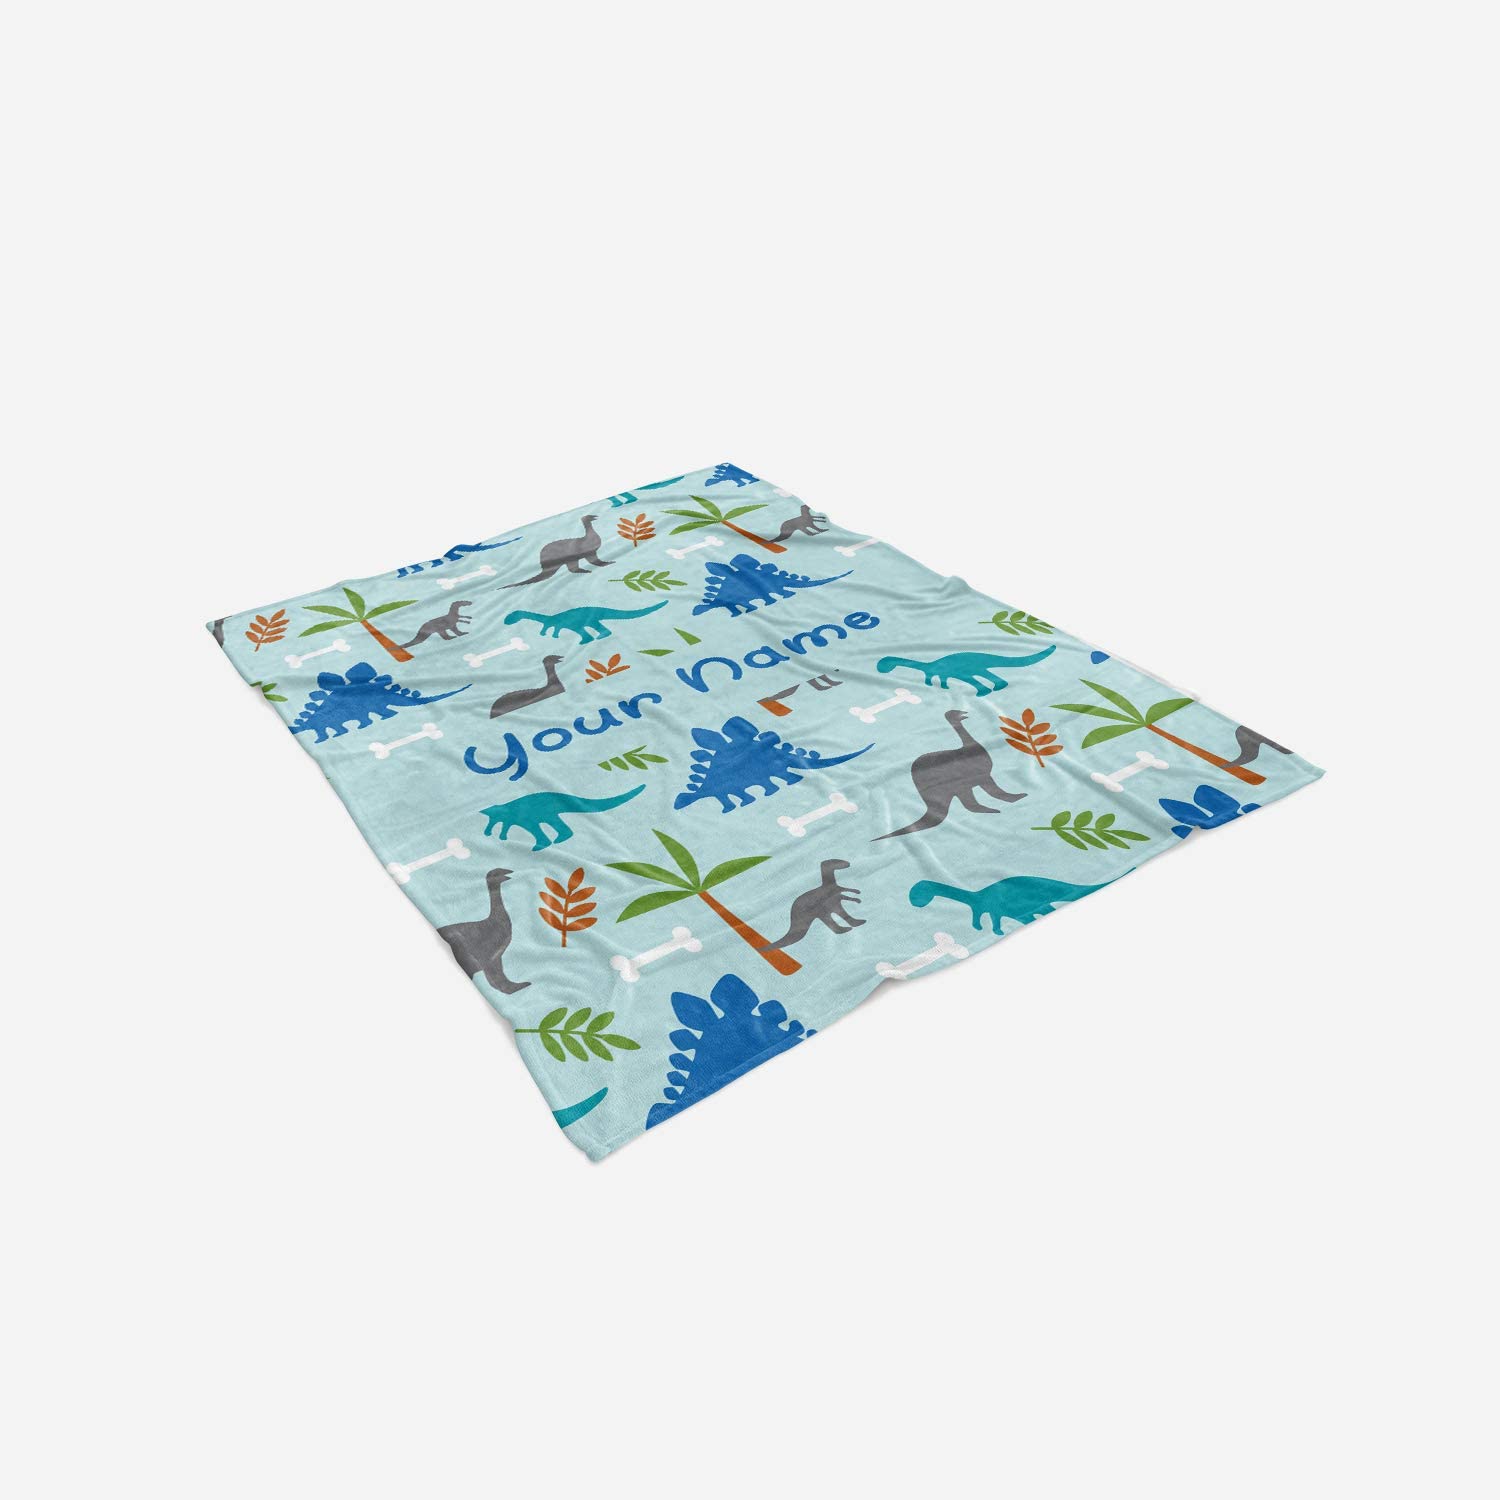 Personalized Corner Custom Dark Blue Dinosaur Fleece Throw Blanket for Kids - Boys Girls Baby Toddler Infants Blankets for Bed